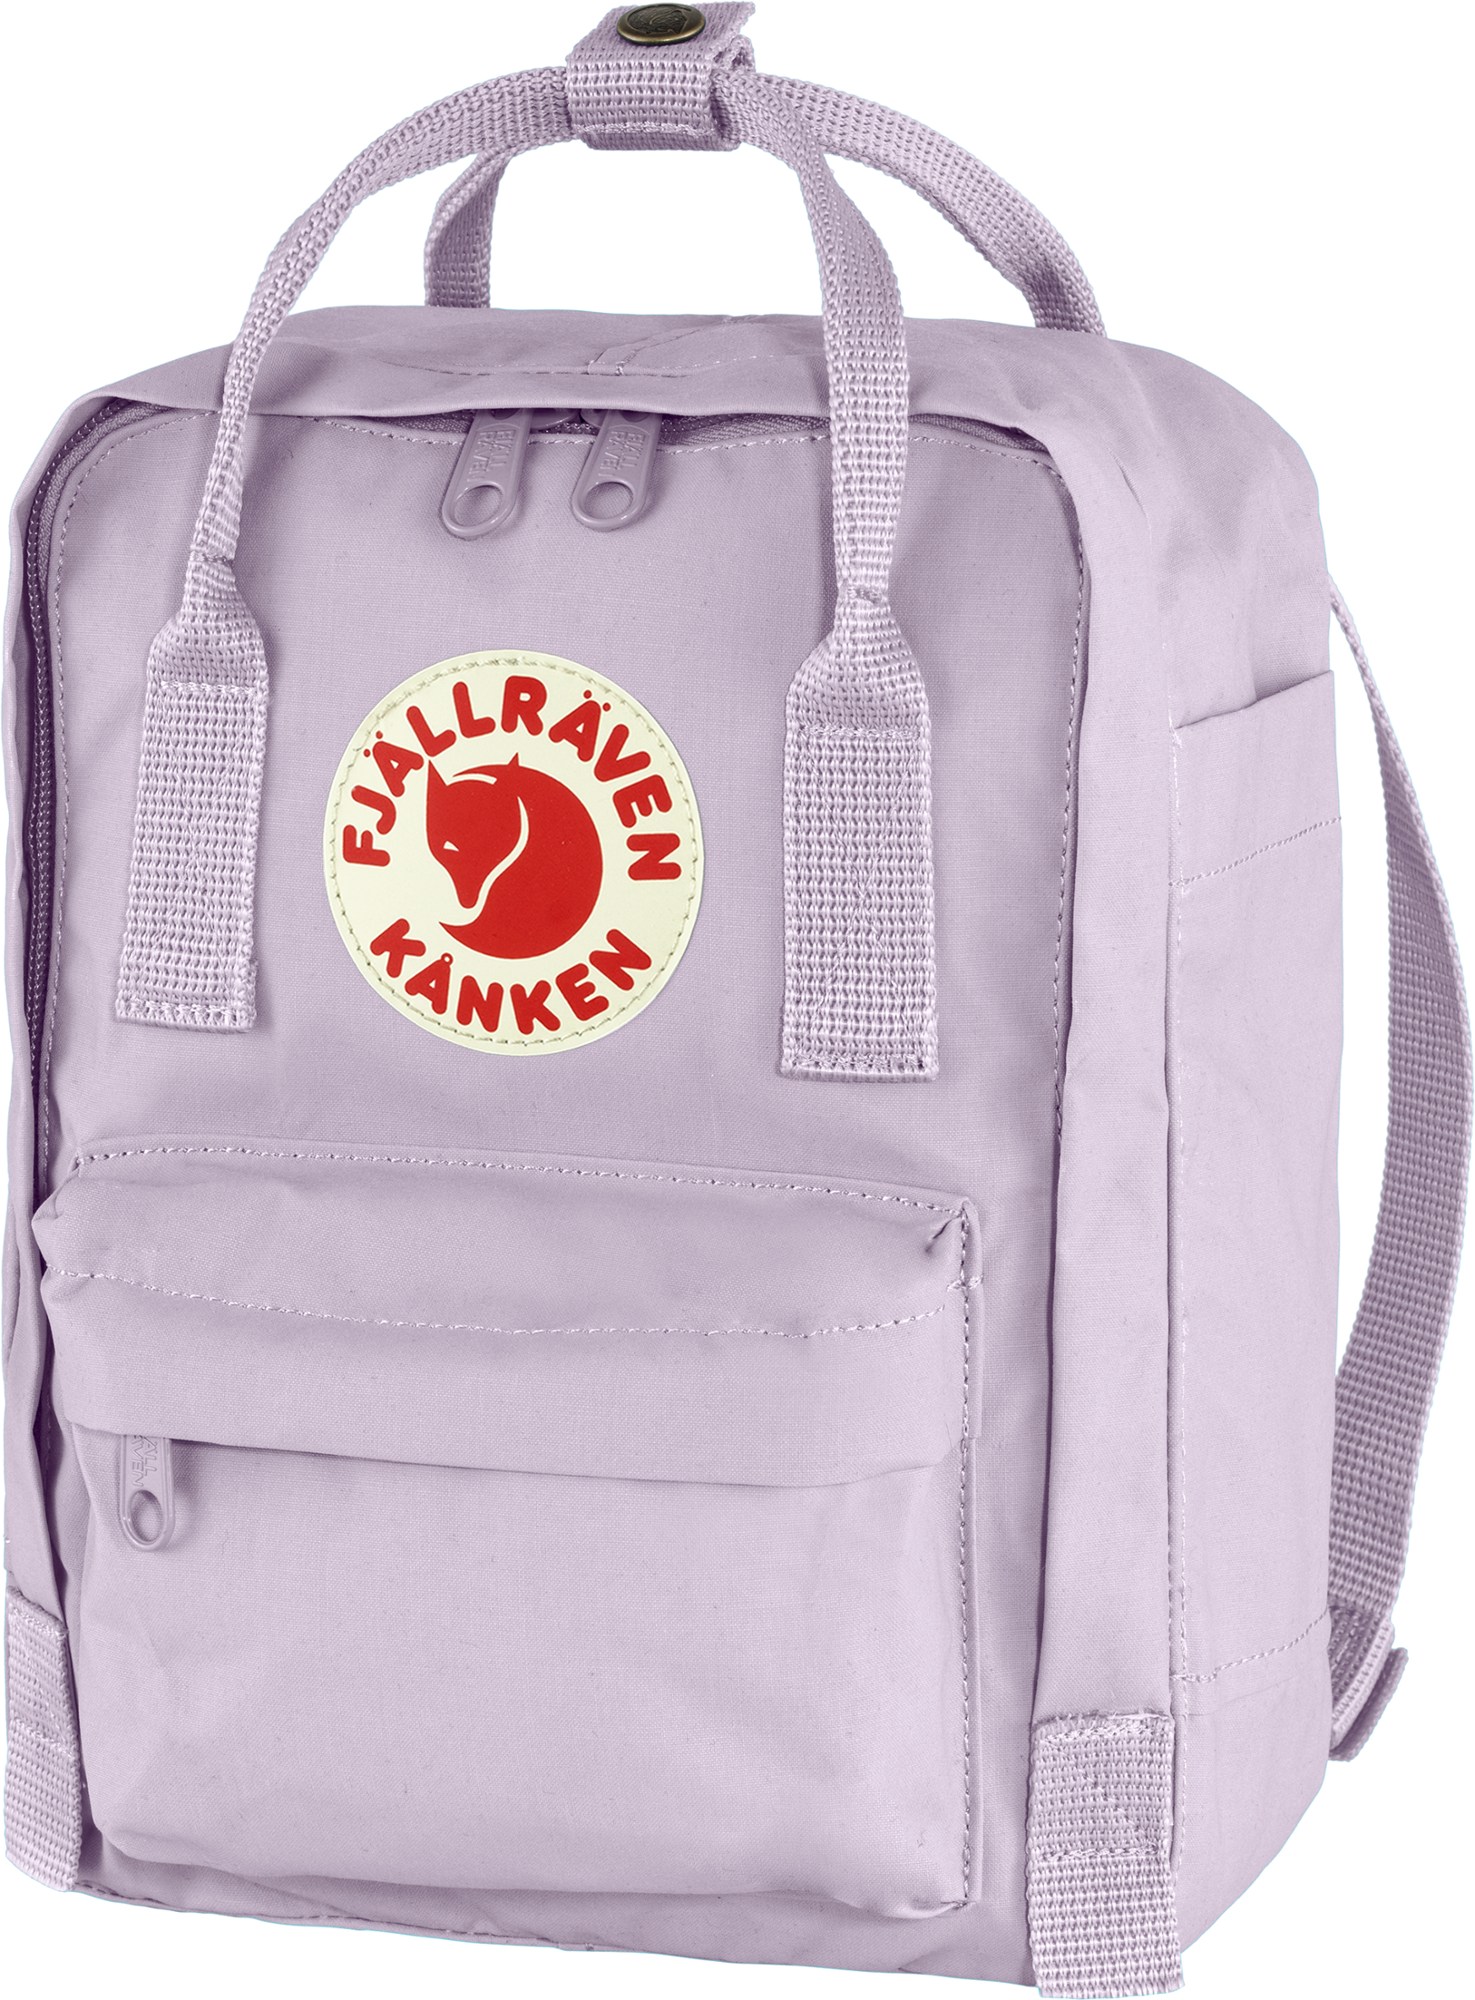 Kanken Mini Pack Fjallraven, фиолетовый